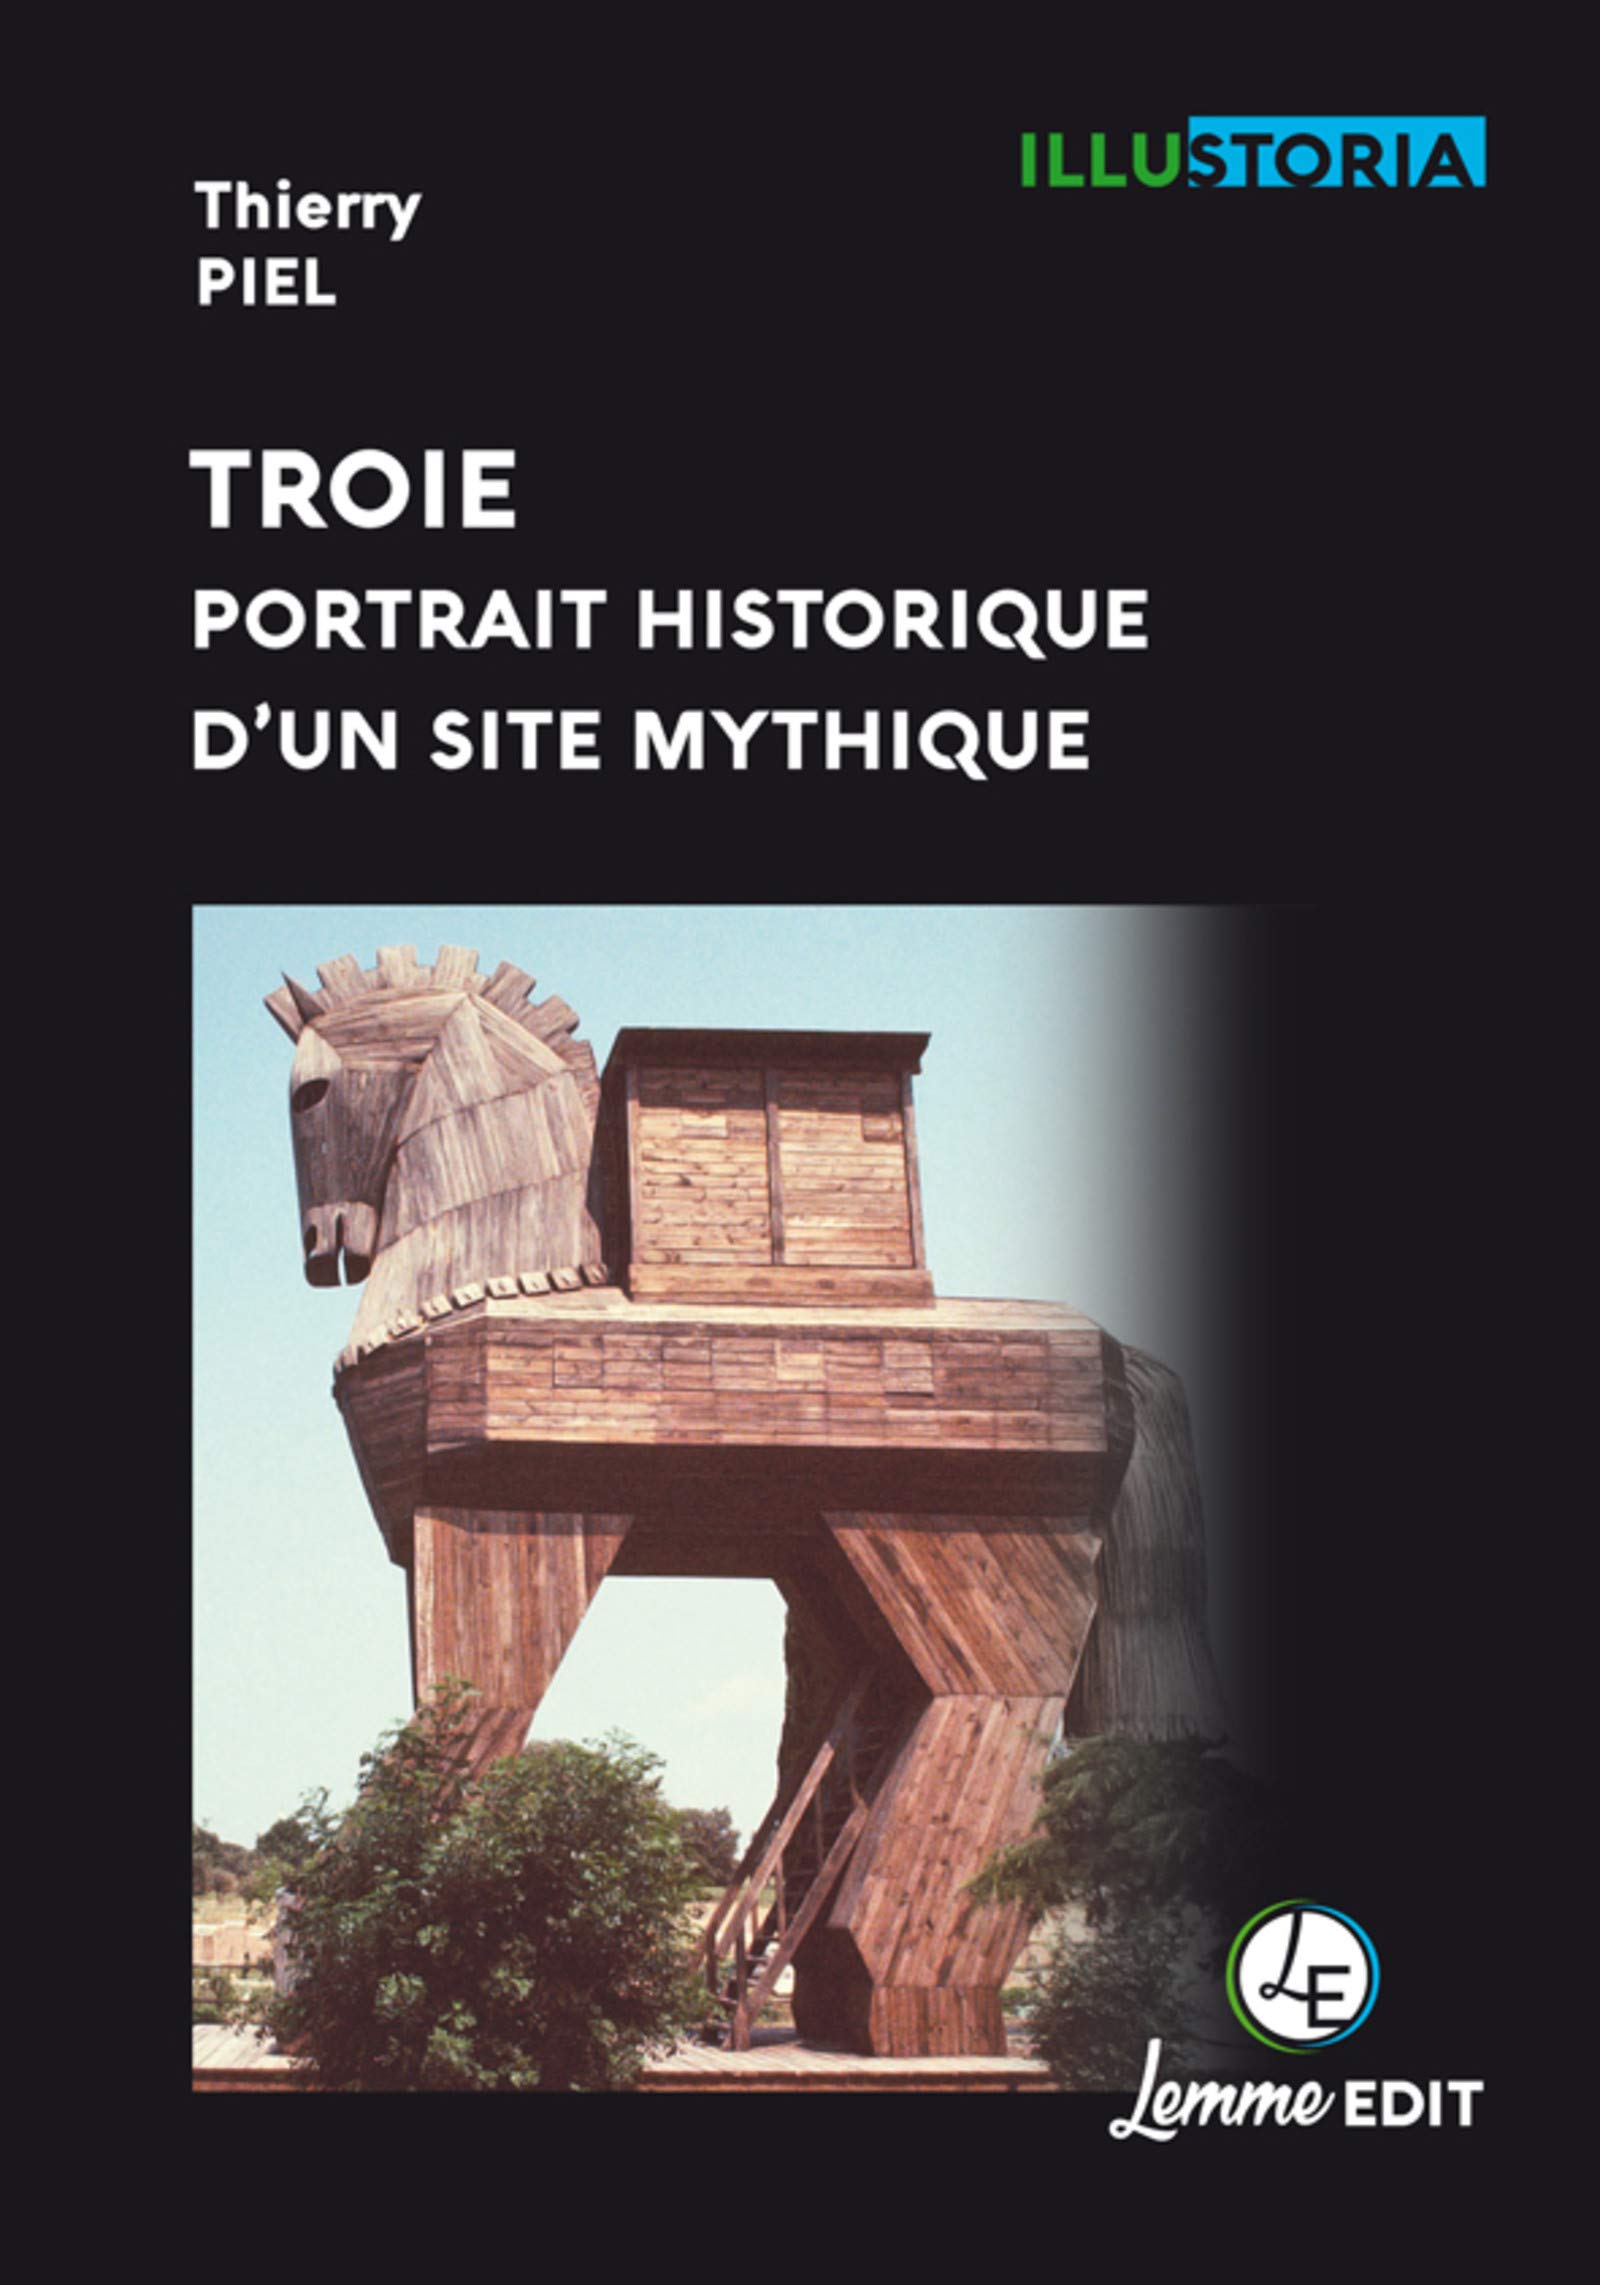 Troie, portrait historique d'un site mythique, 2019, 144 p.